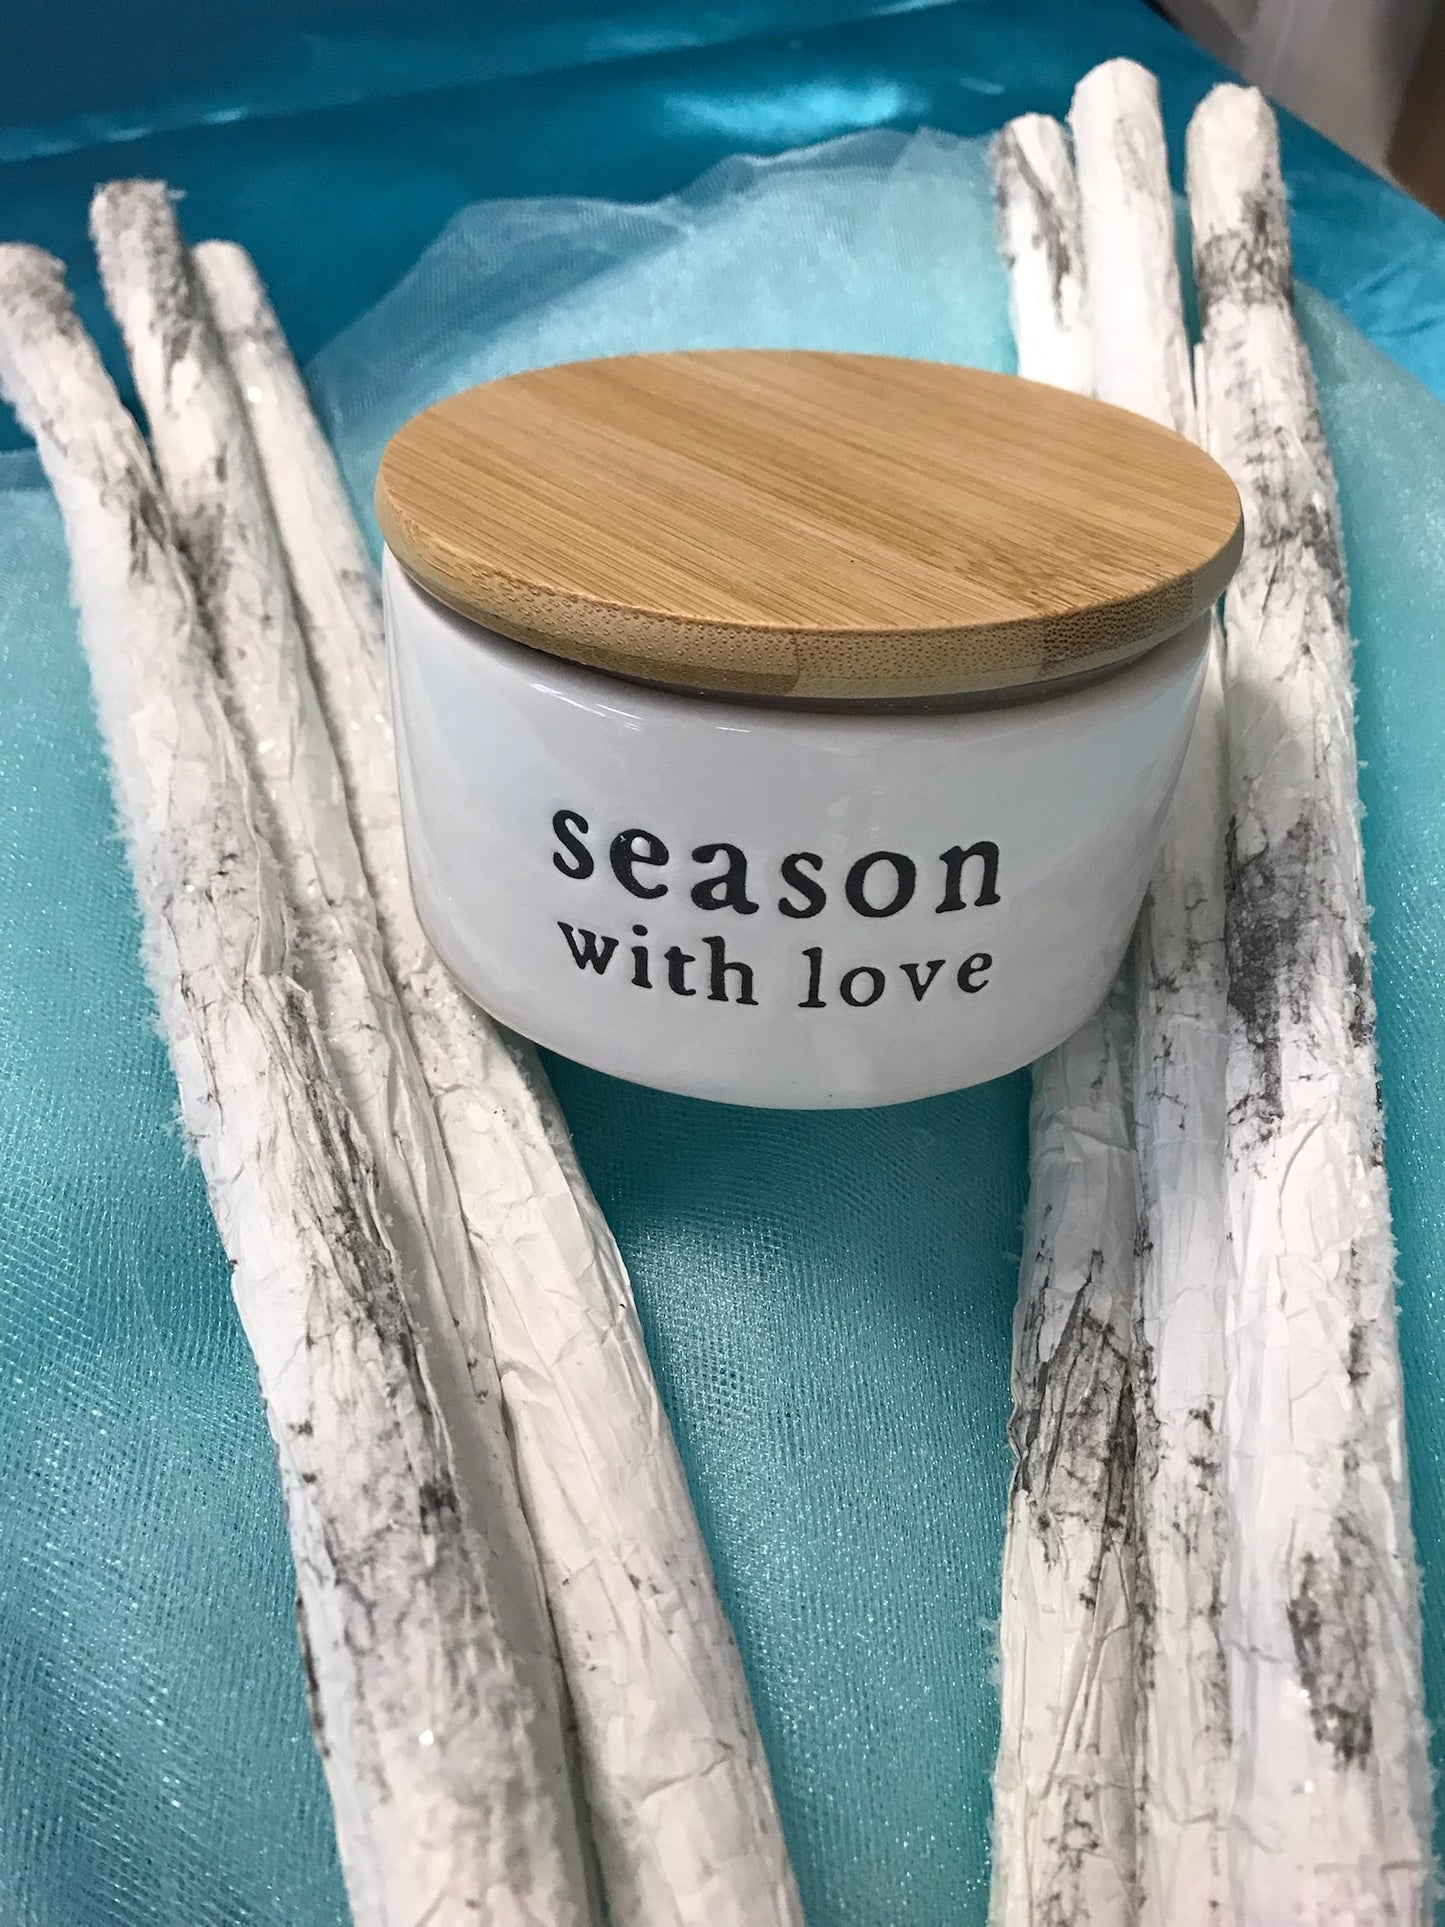 "season with love" Ceramic Salt Box